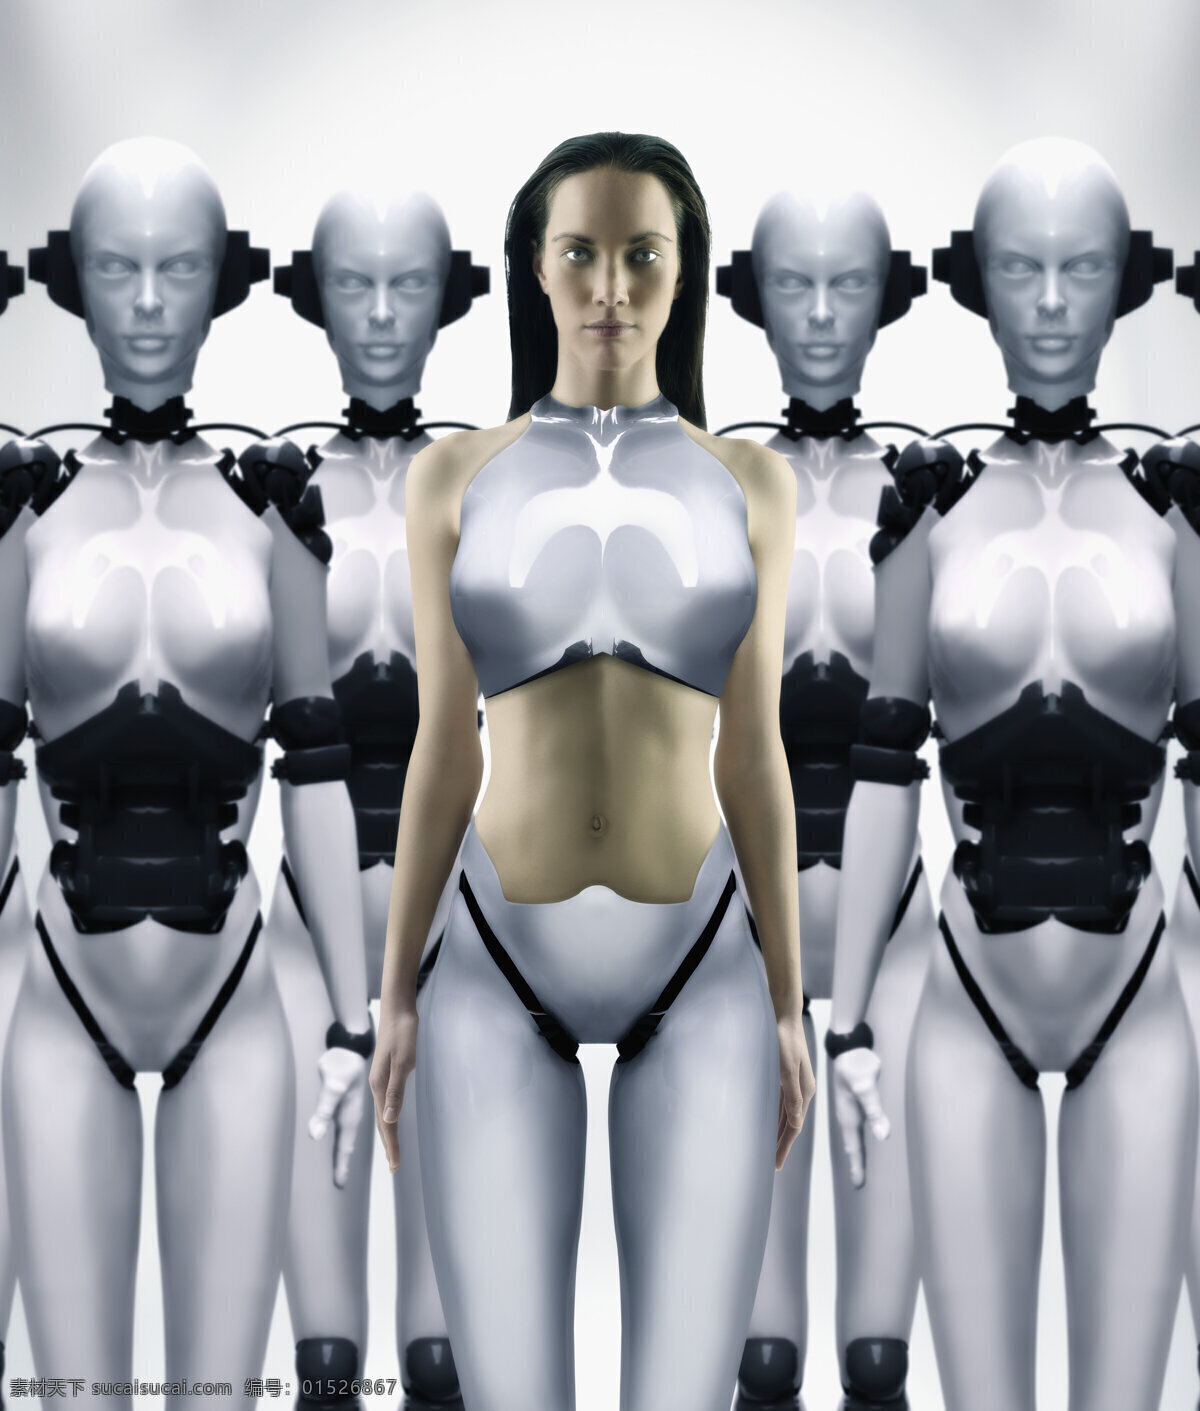 未来 高科技 女 机器人 未来科技 高科技产品 女性 性感 盔甲 金属 高清图片 其他类别 现代科技